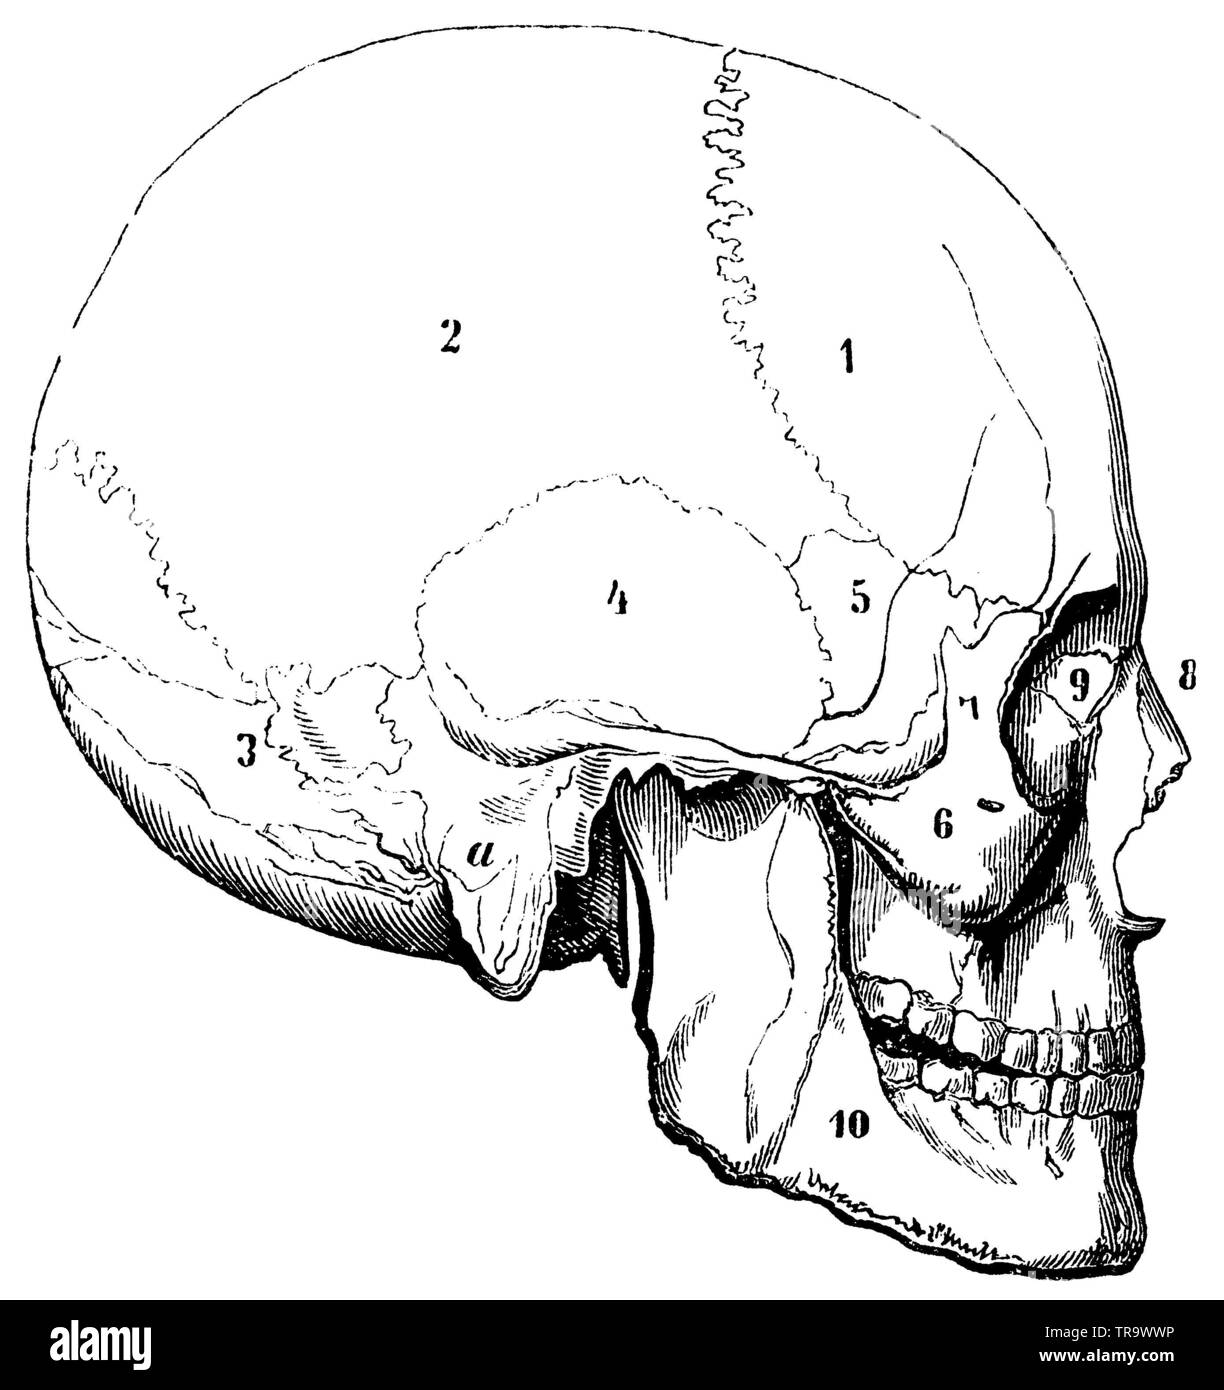 Cranio Ortognath (europeo). 1) Fronte osso, 2) osso parietale, 3) osso occipitale, 4) osso temporale, a) il suo processo di tettarella, 5) osso cuneiforme, 6) guancia osso, 7) ganascia superiore osso, 8) osso nasale, 9) Lacrum osso, 10) dell'osso mandibolare., , (Enciclopedia, 1893) Foto Stock